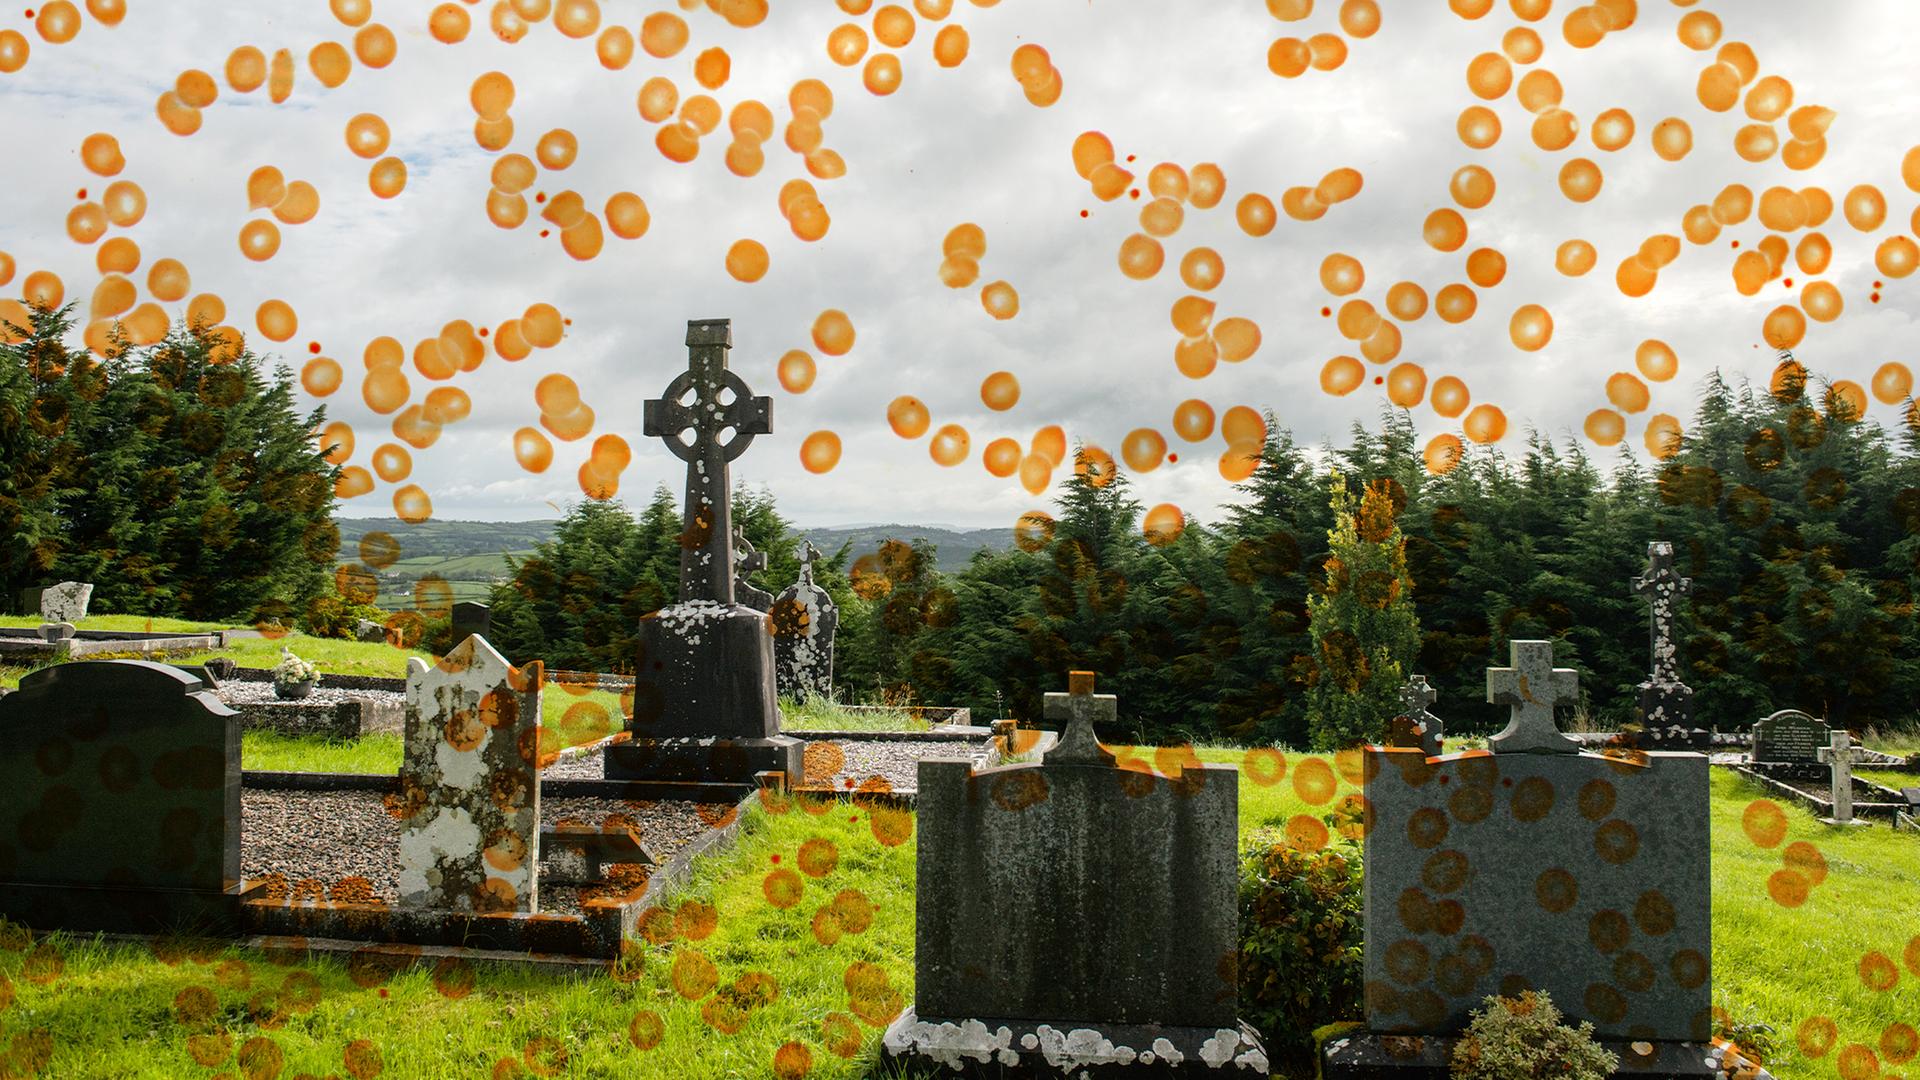 Blick auf einen Friedhof. Das Foto wird von einer Grafik mit orangen Punkten überlagert.